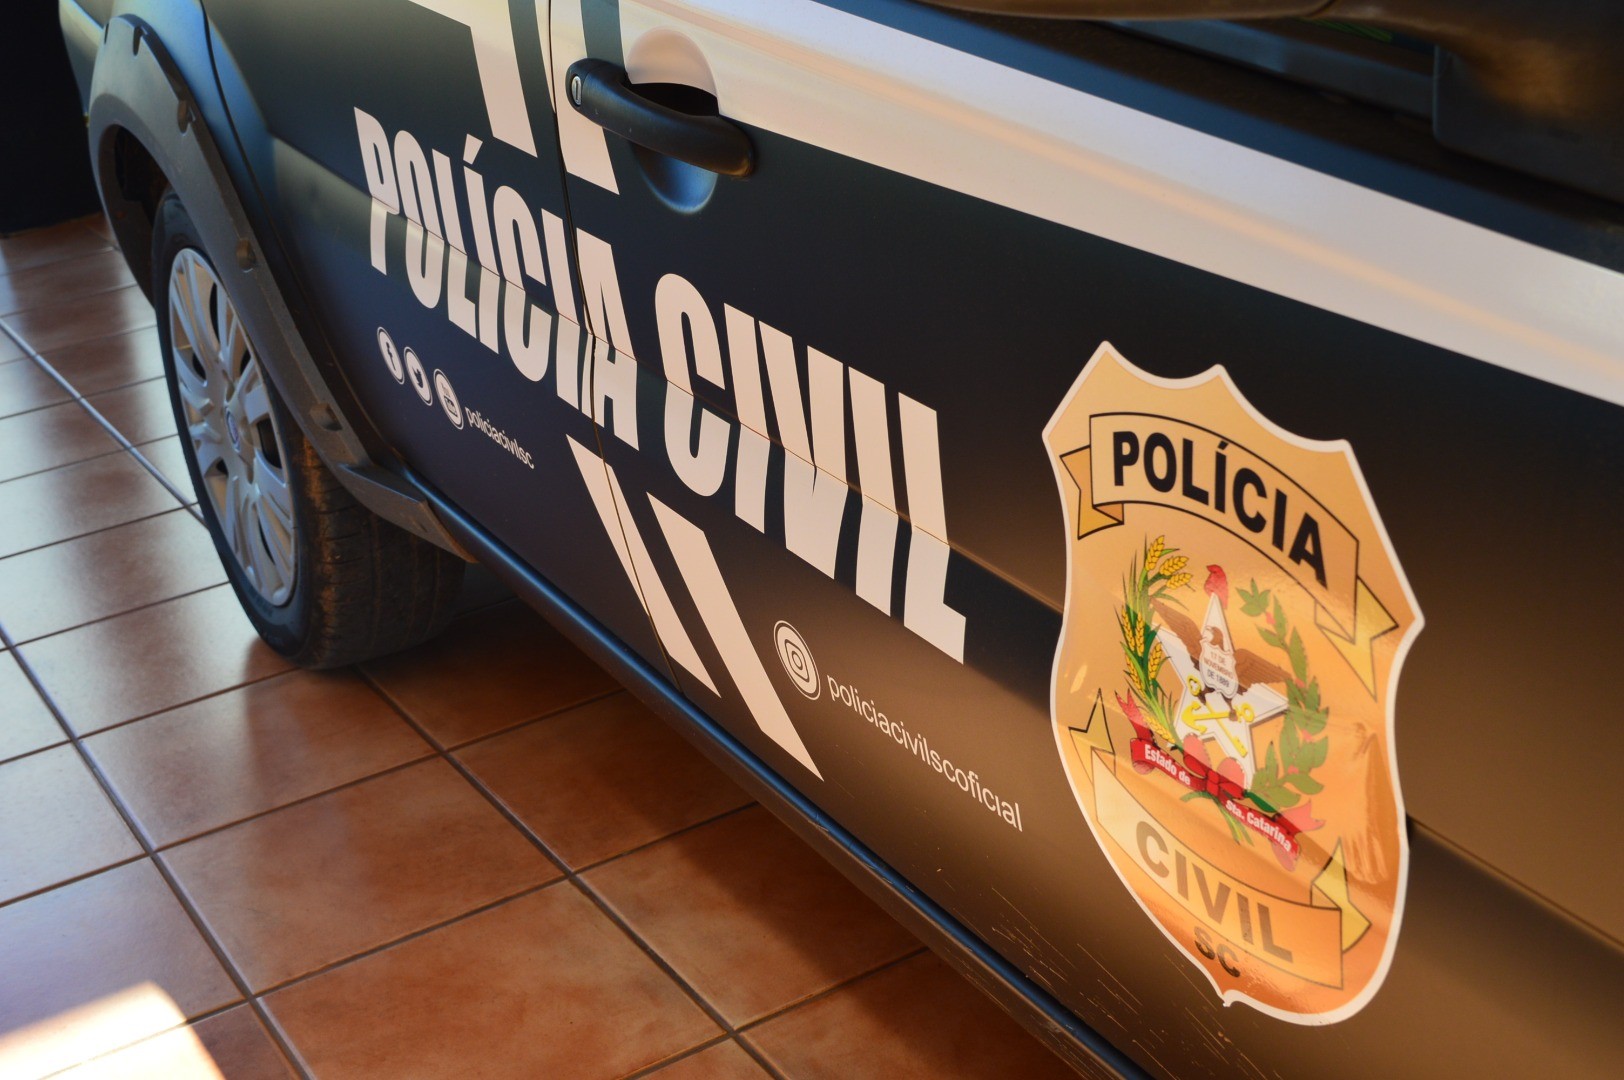 Polícia Civil de Maravilha recupera veículo furtado e prende pessoa por receptação